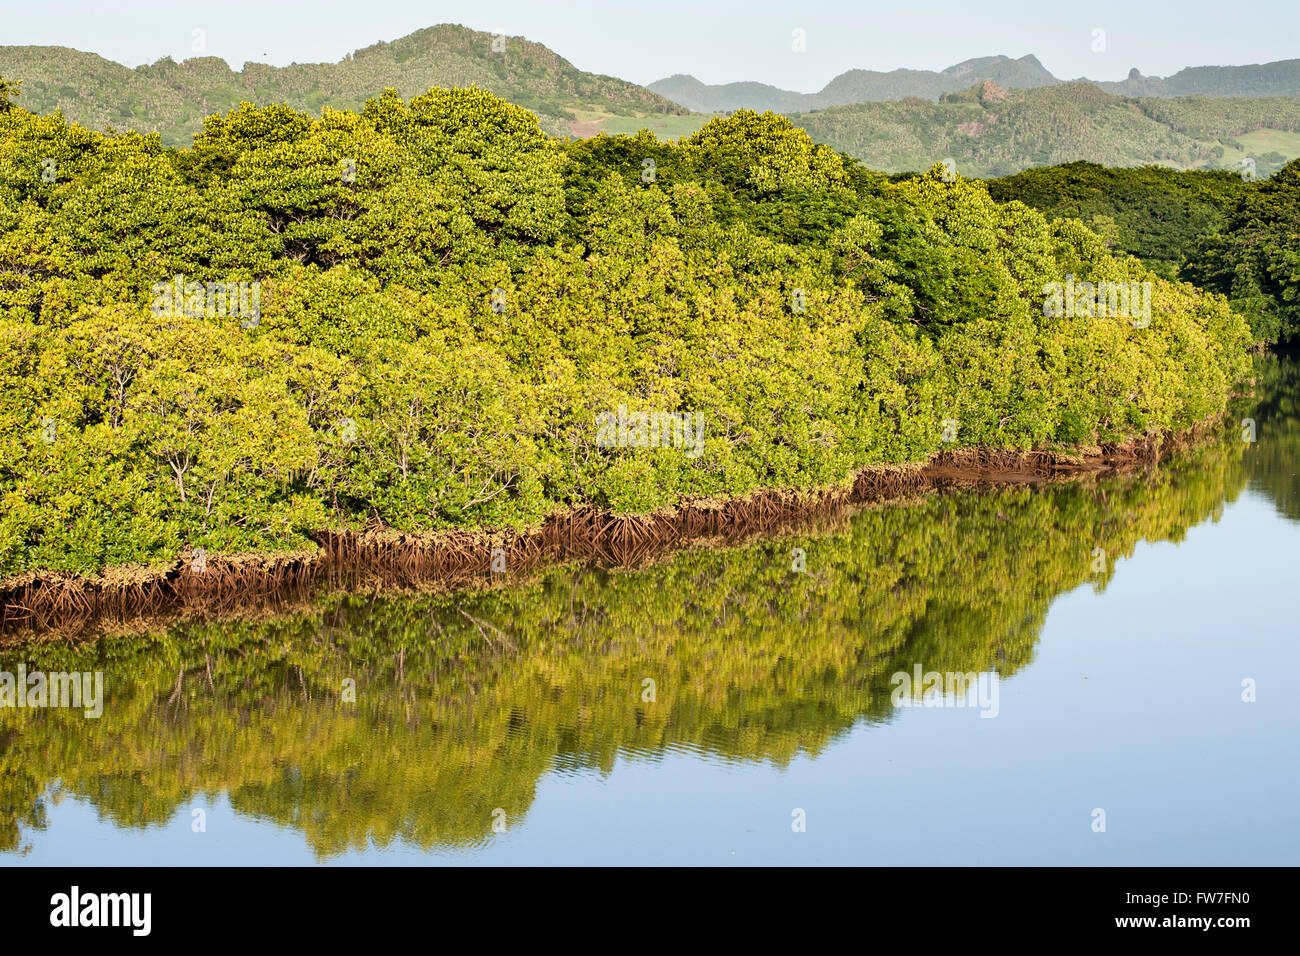 East coast scenery on the island of Mauritius. Stock Photo